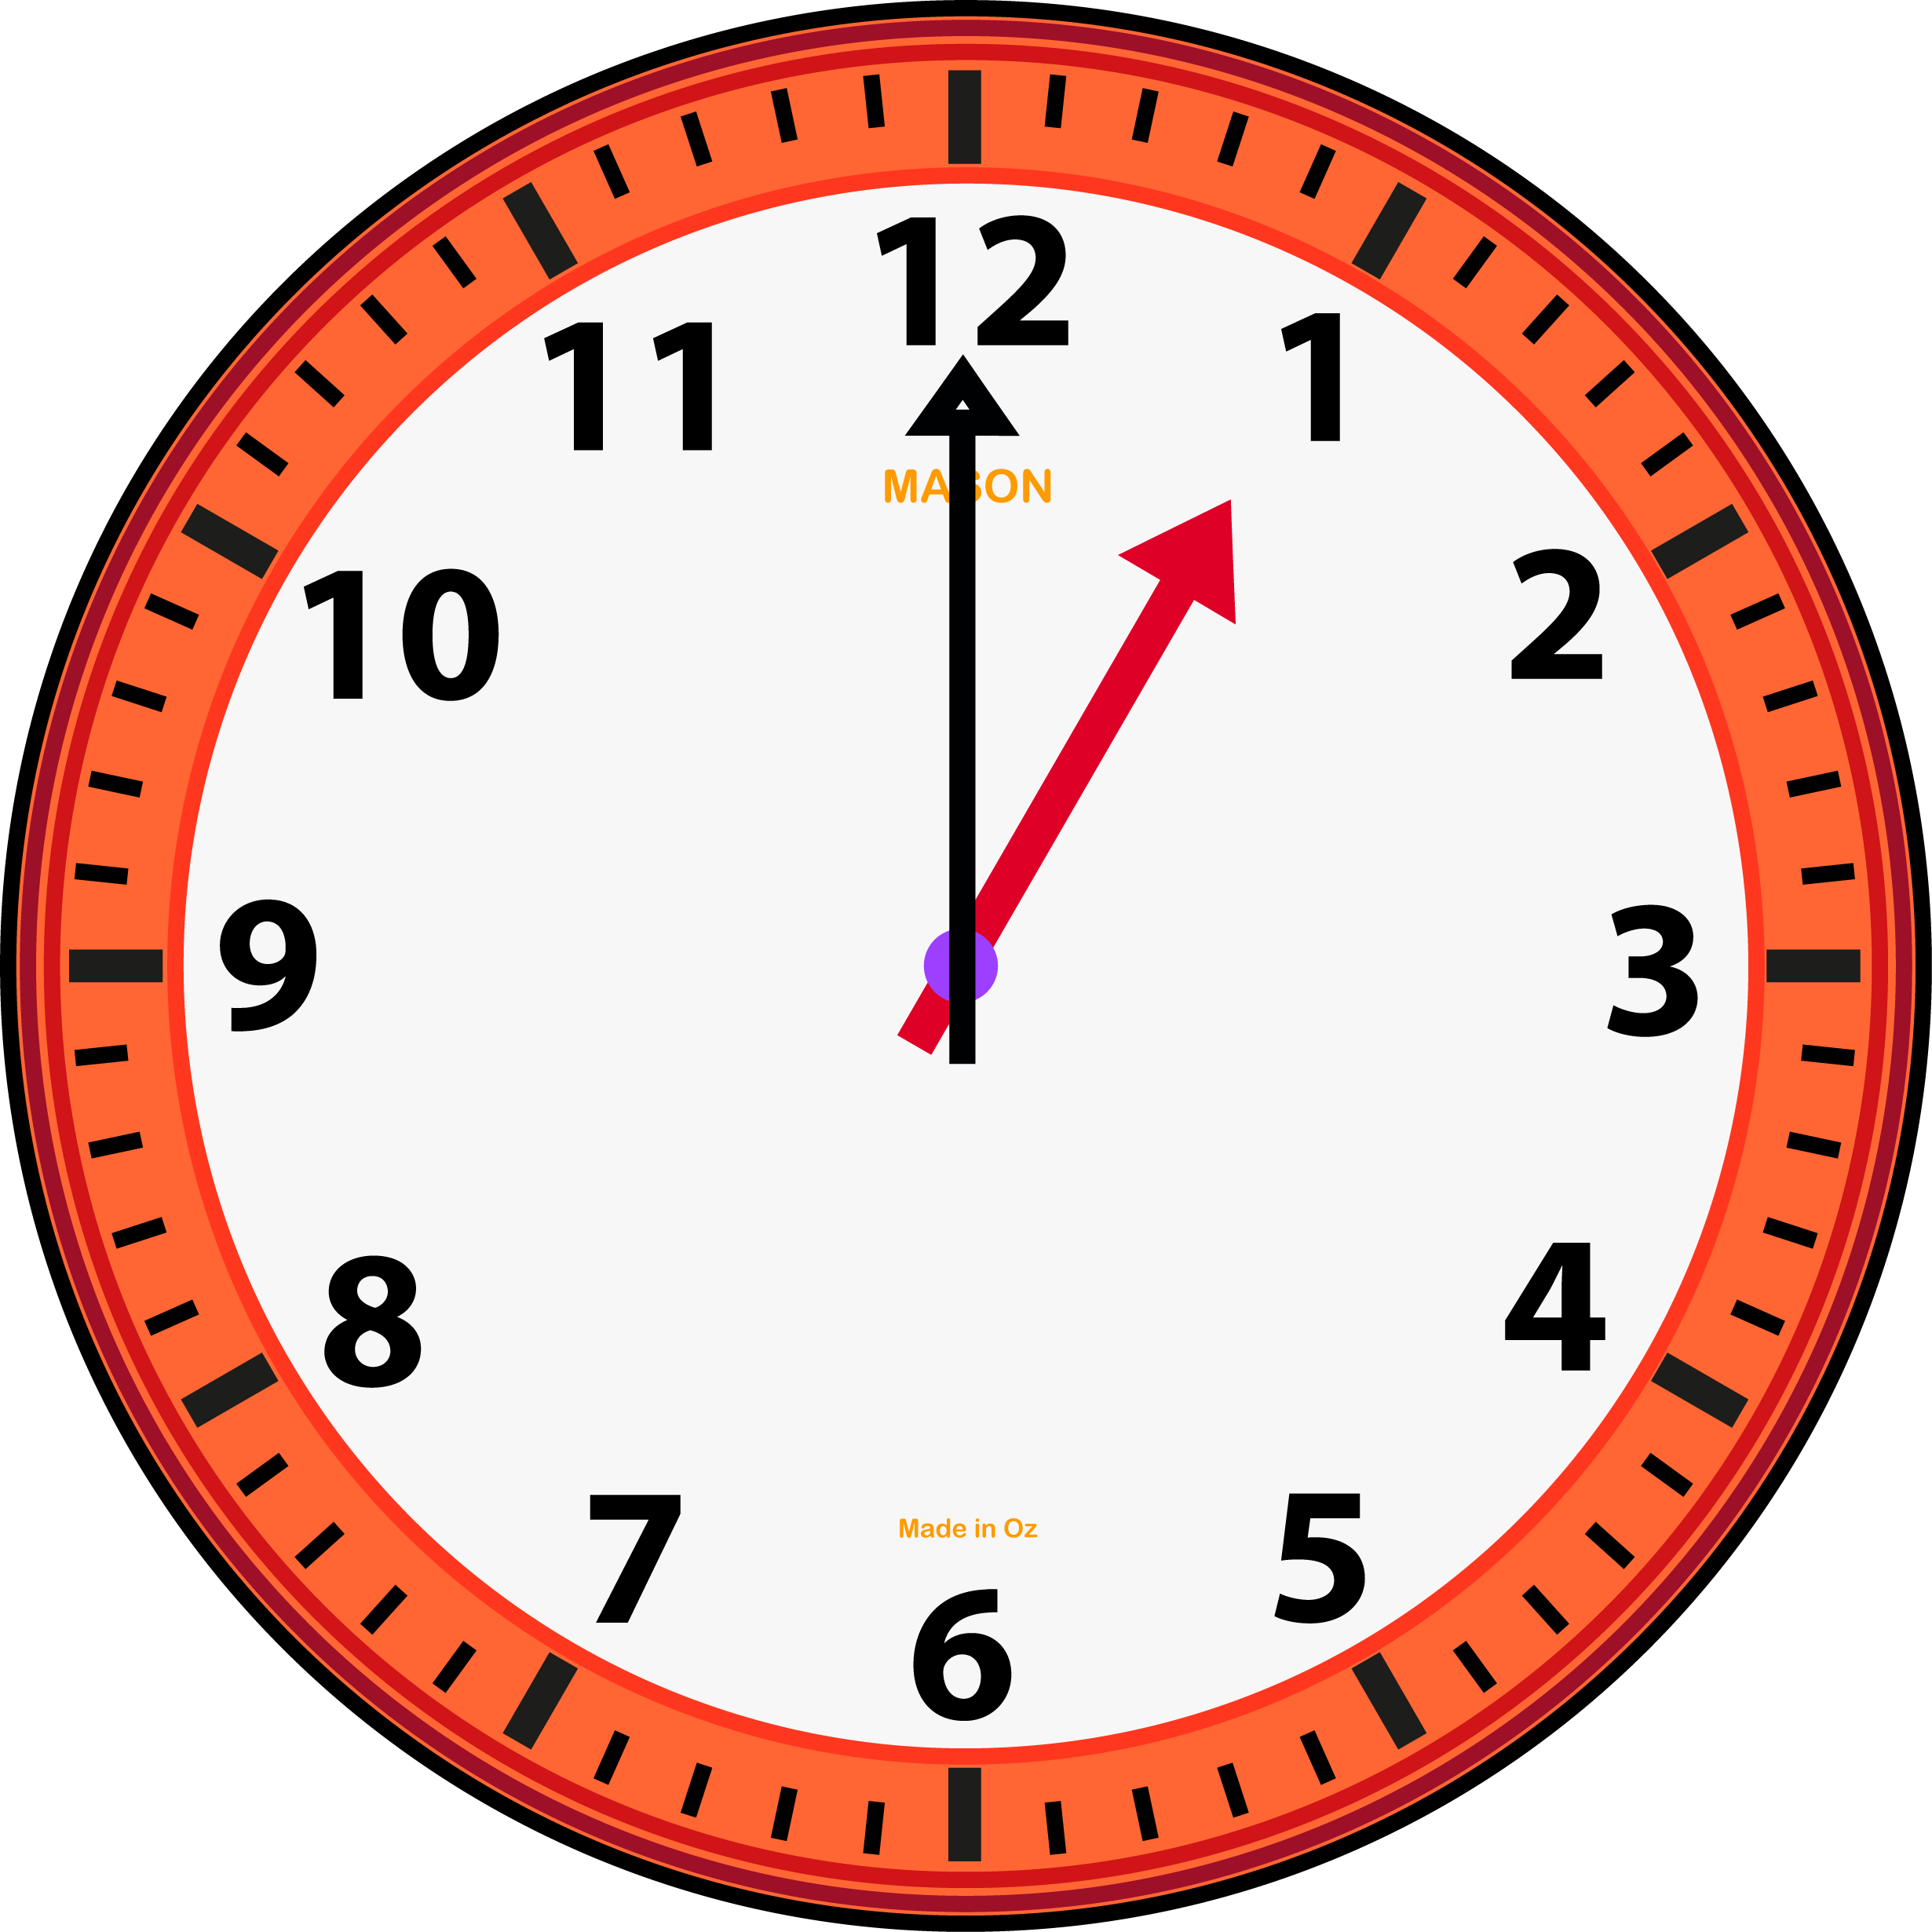 Часы 1 час. Изображение часов. Часы показывают час. Рисунок часов. Сайт часы 5